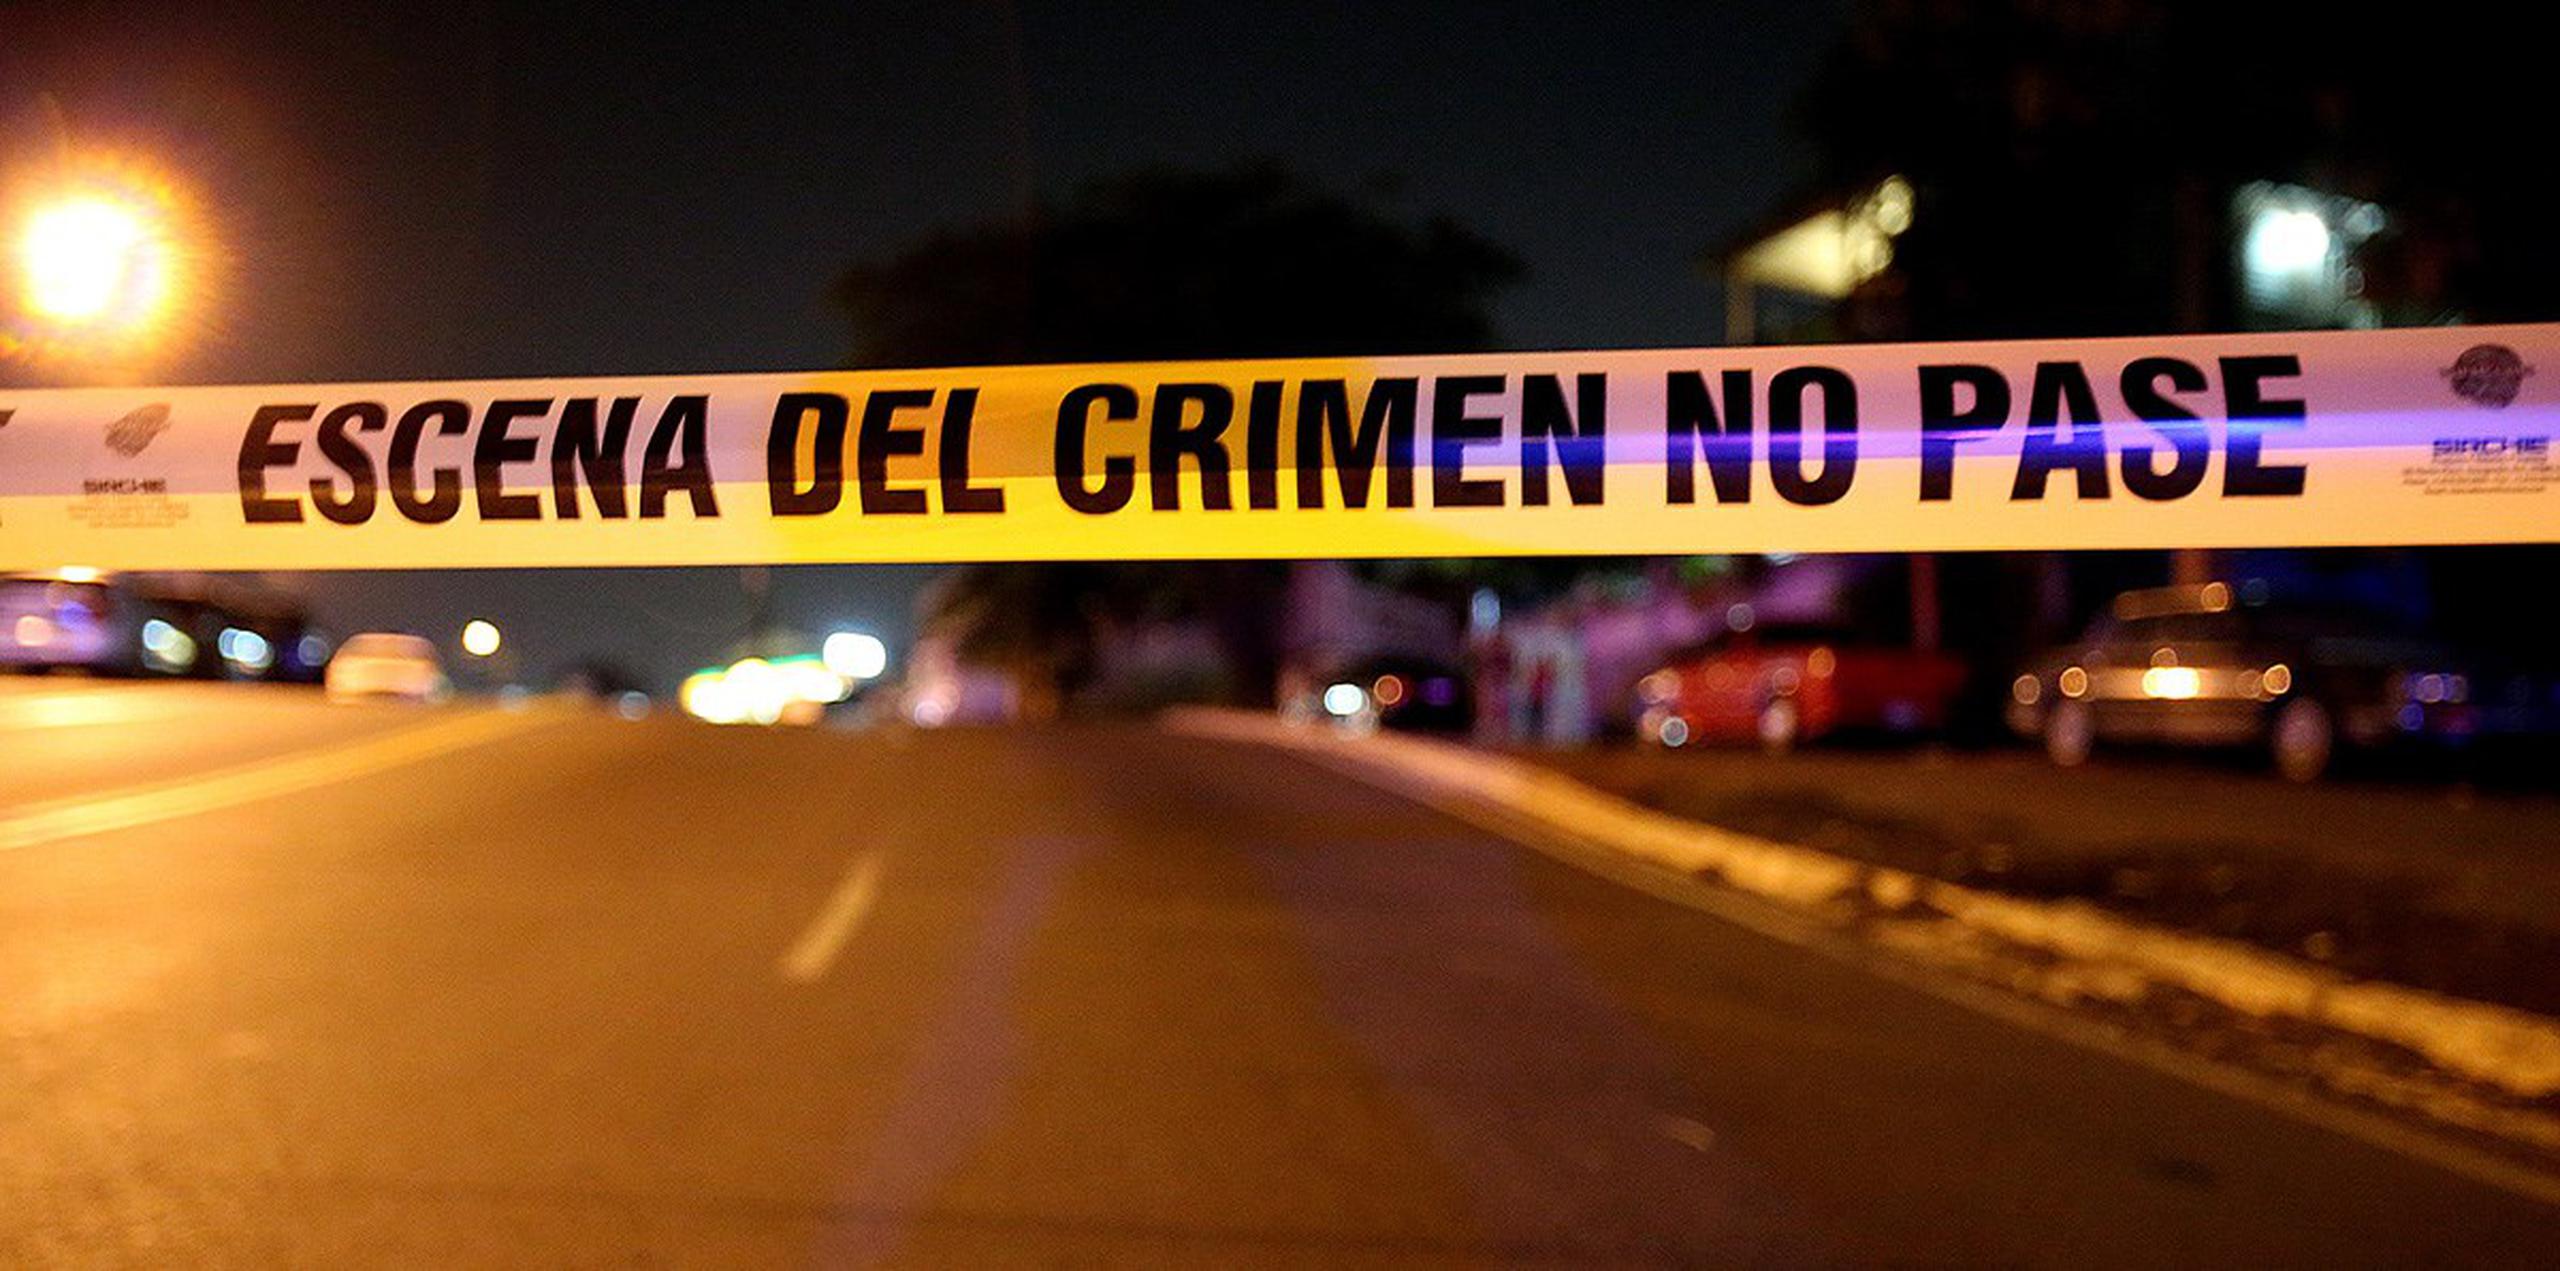 El asesinato se reportó esta noche en Guaynabo. (Archivo / GFR Media)